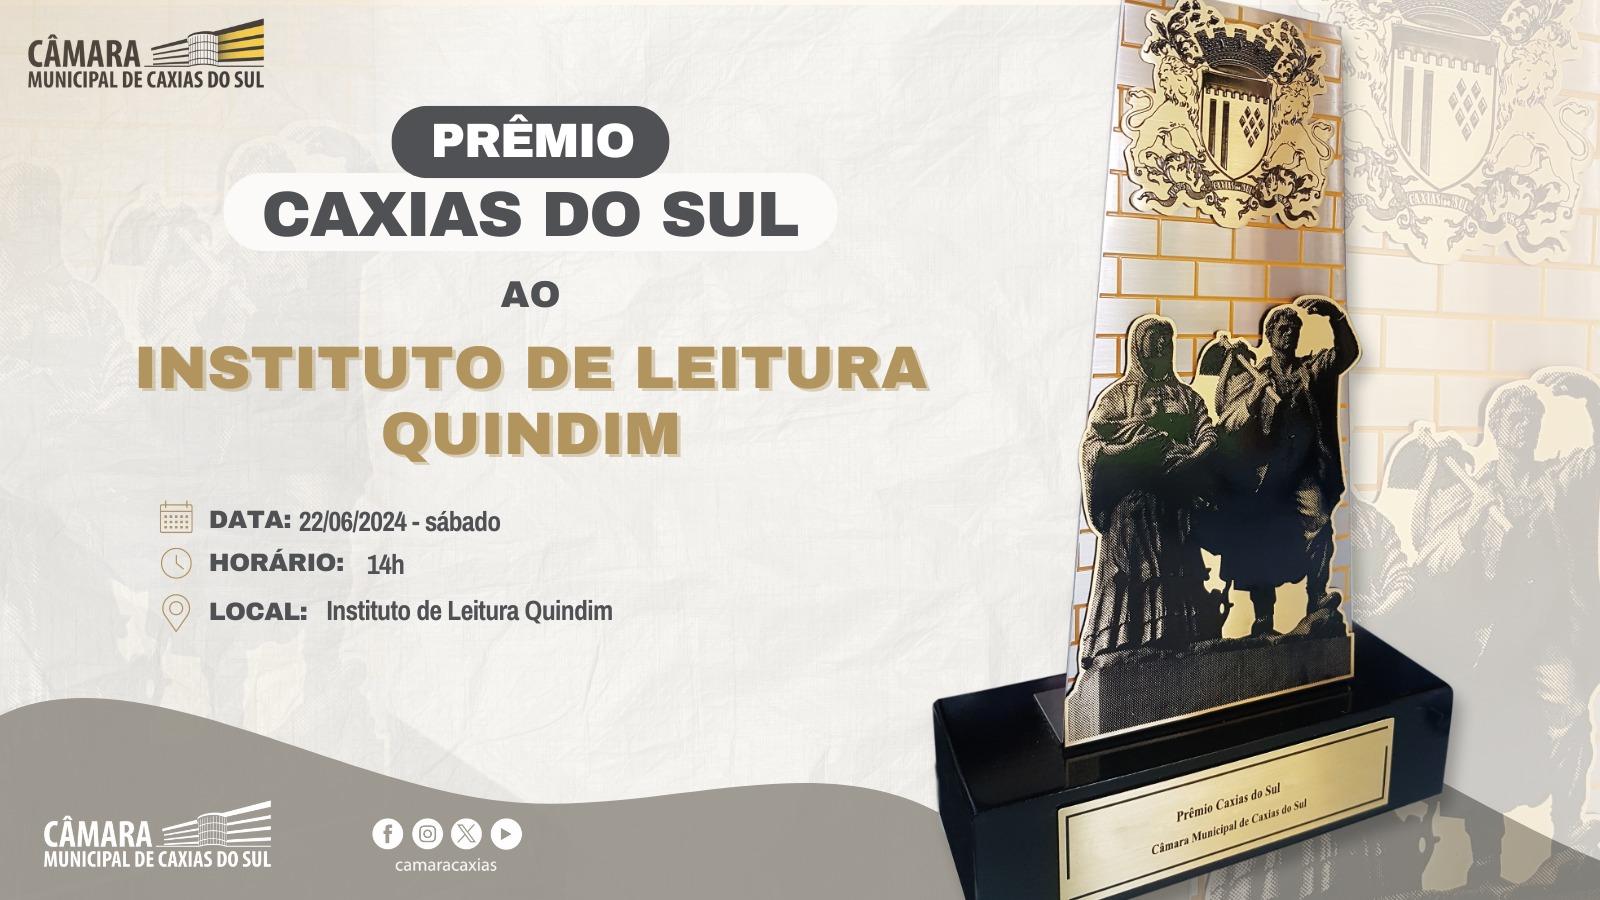 Leia mais sobre Instituto de Leitura Quindim receberá o Prêmio Caxias do Sul neste sábado